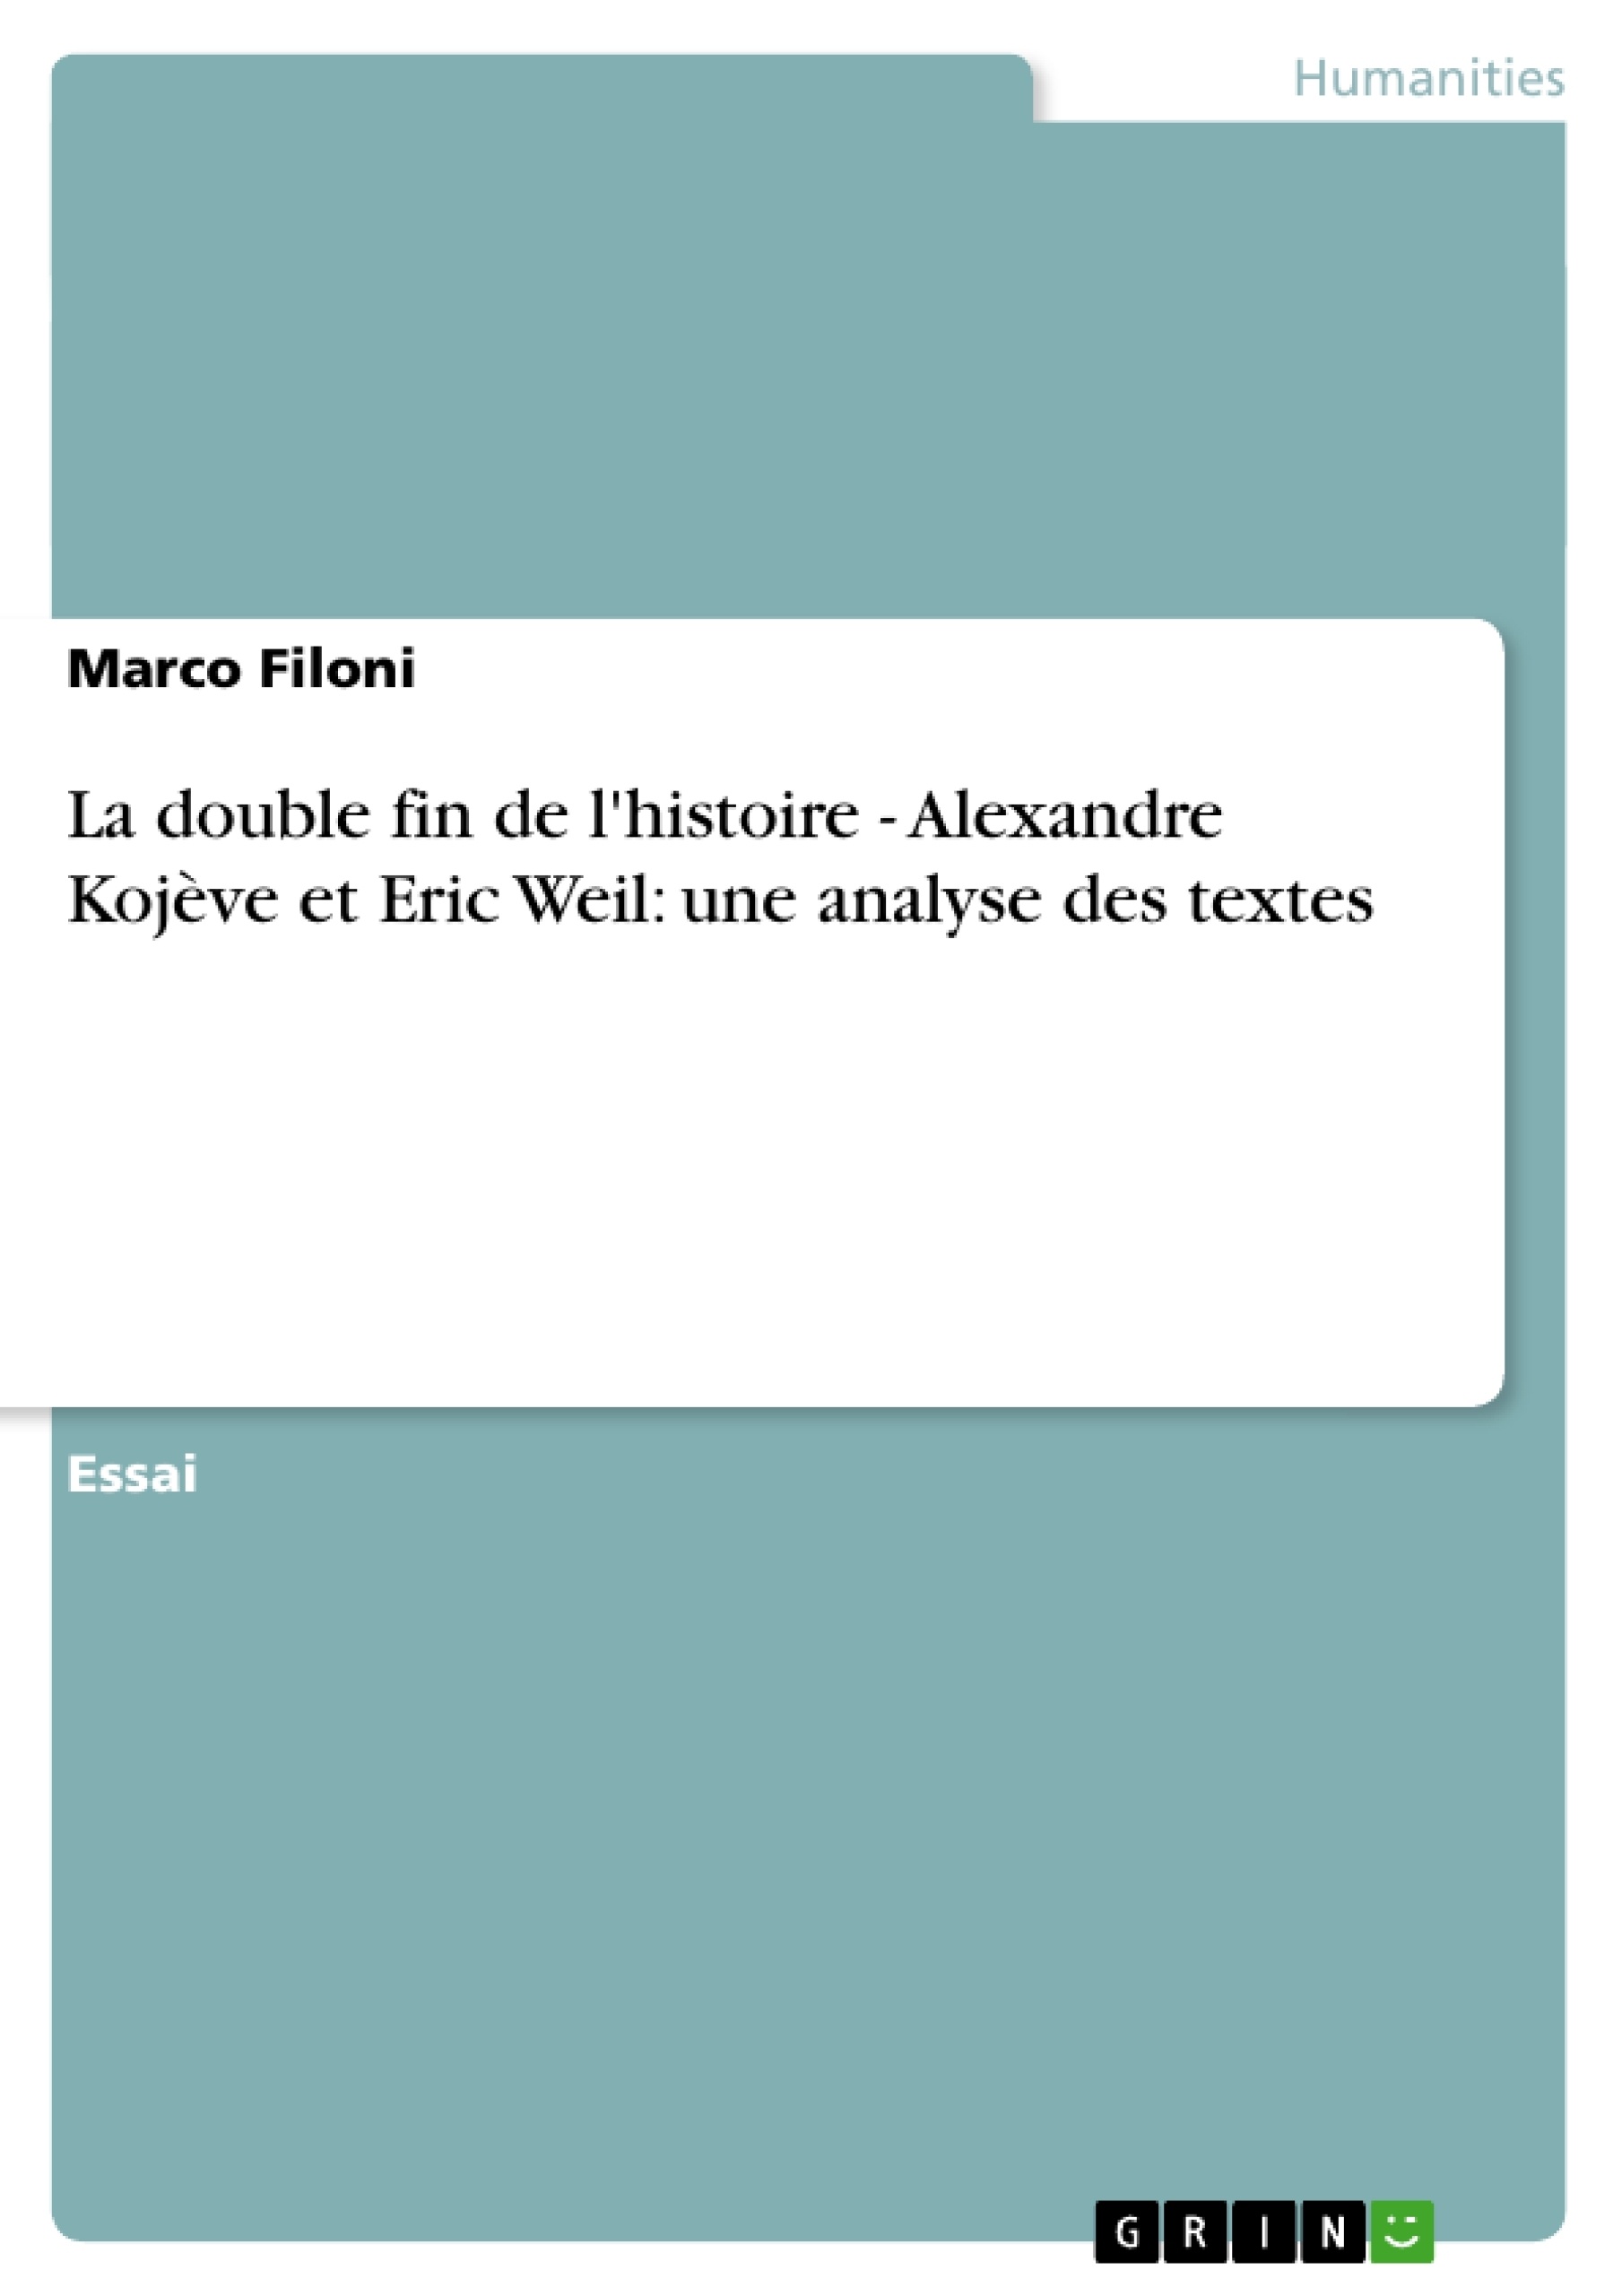 Título: La double fin de l'histoire - Alexandre Kojève et Eric Weil: une analyse des textes